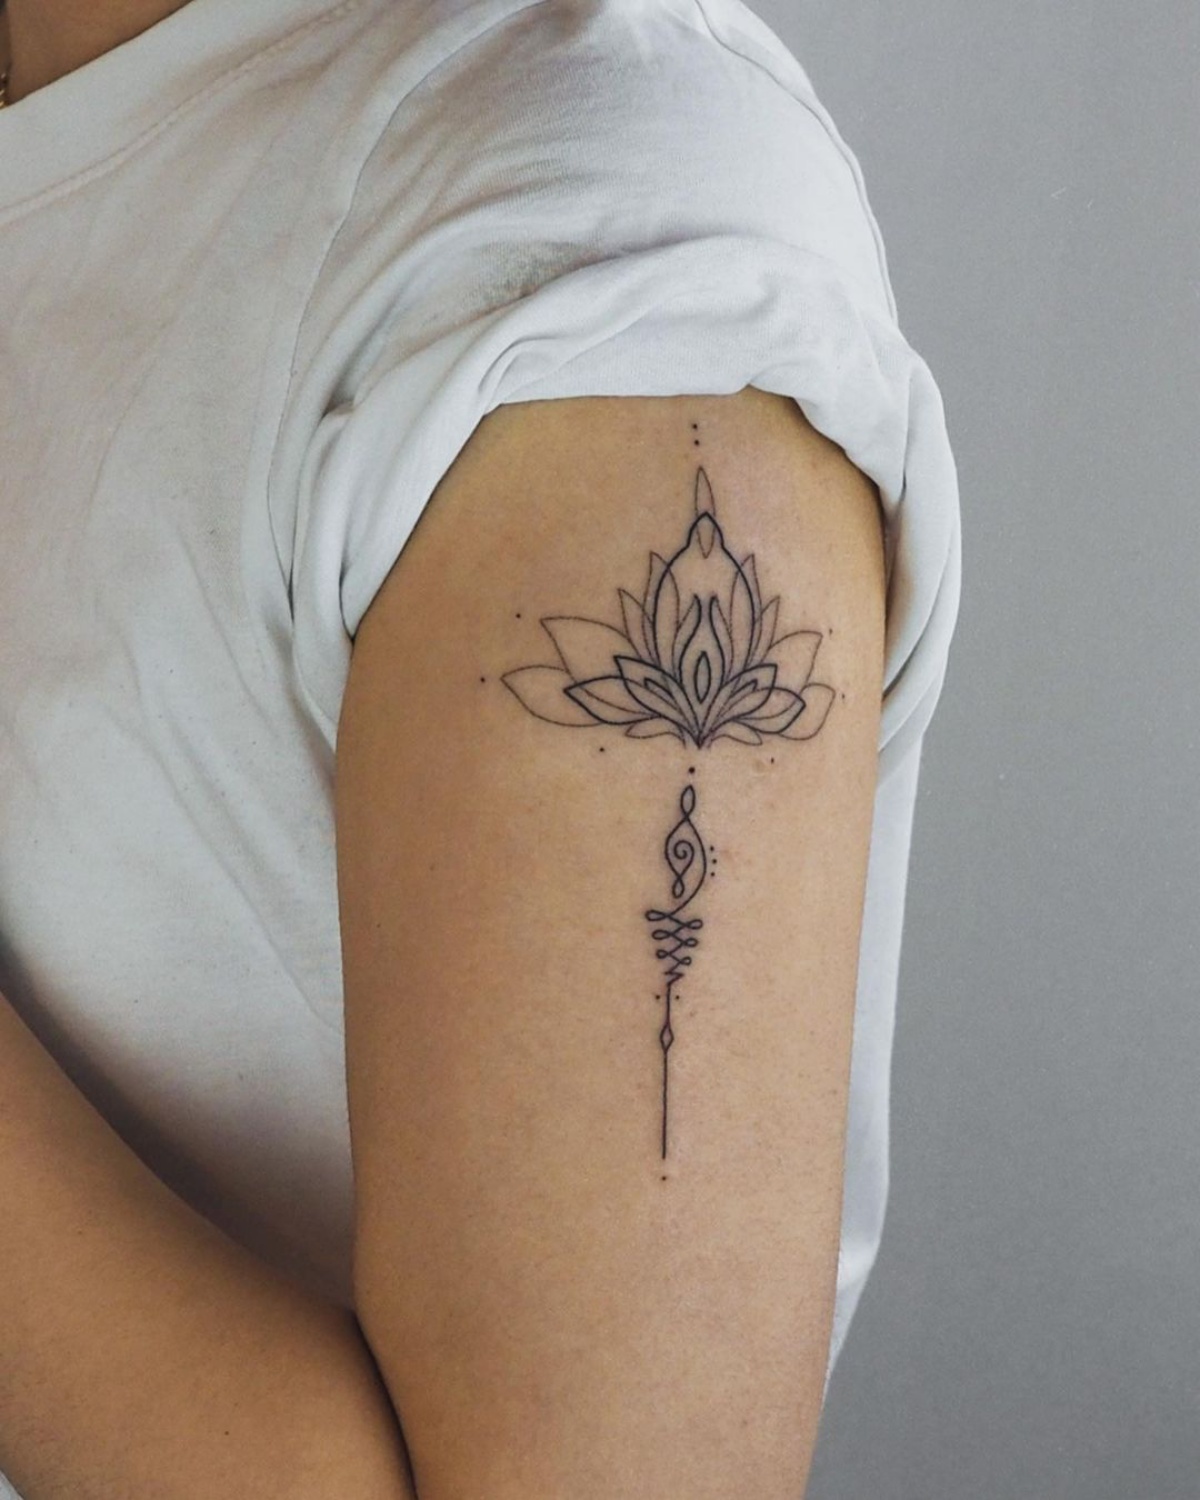 tatuaggio sul braccio donna disegno fiore di loto